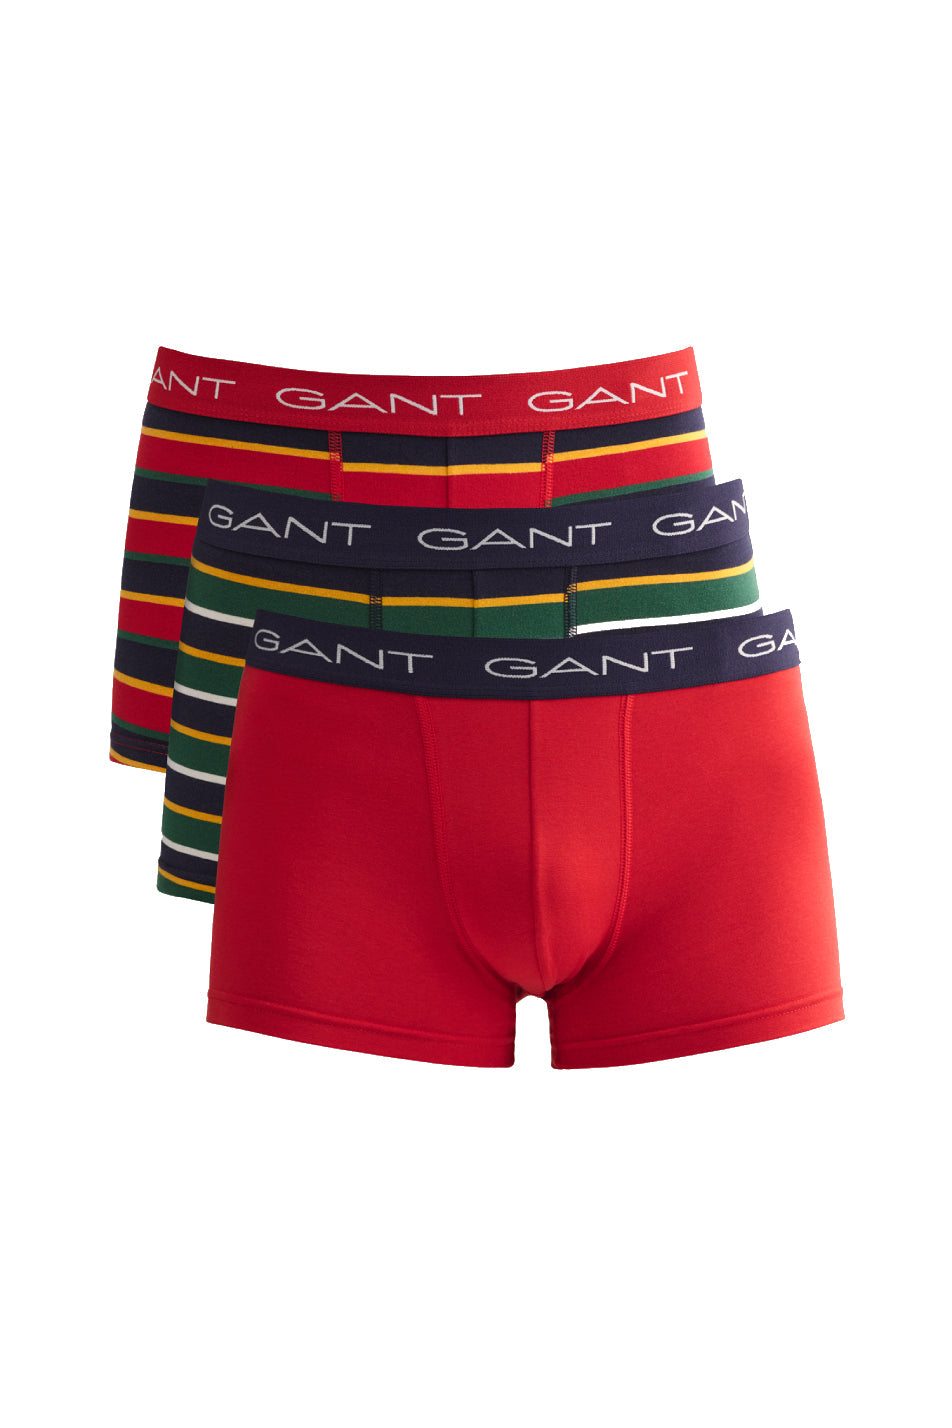 Gant 3 Pack Men's Striped Trunk